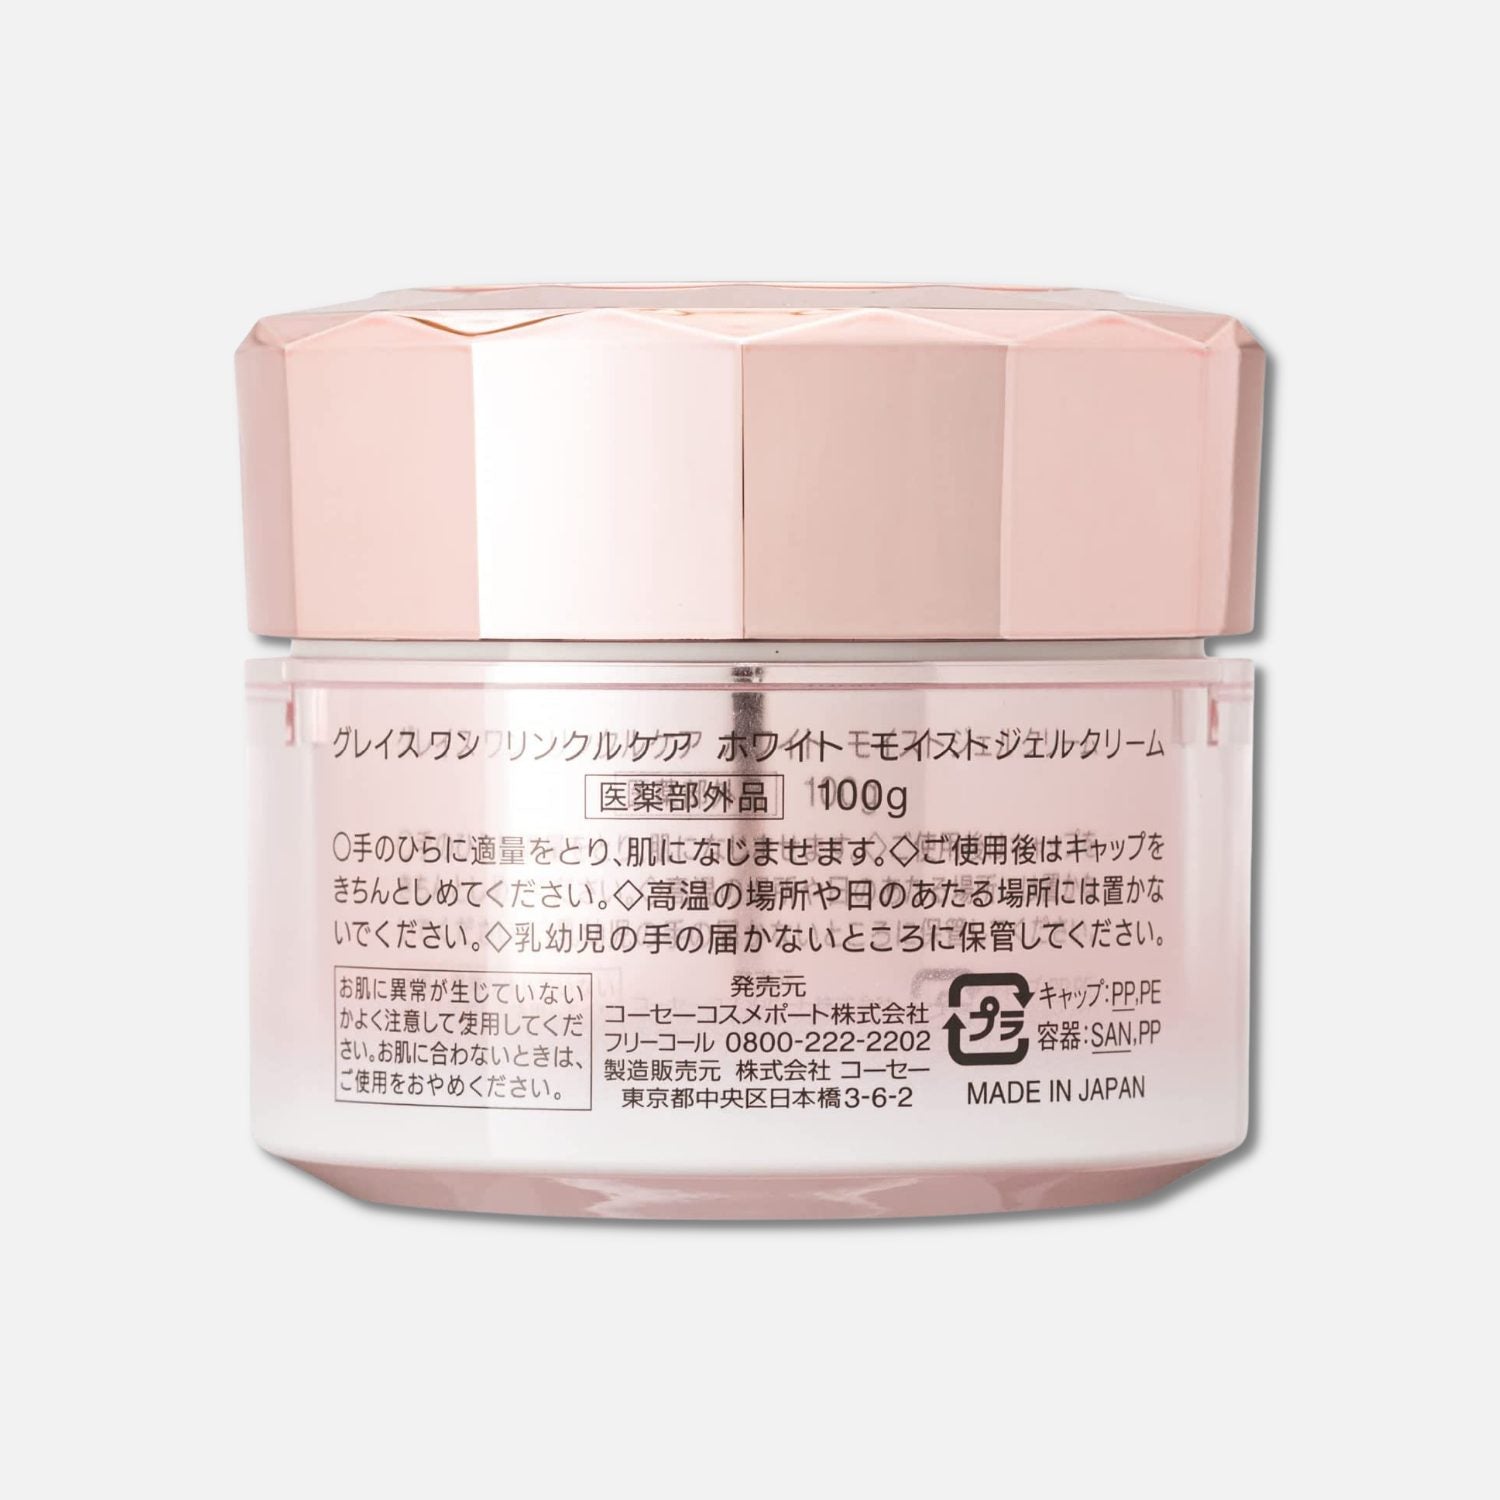 Kose Grace Wrinkle Care White Moist Gel Cream 100g - Buy Me Japan